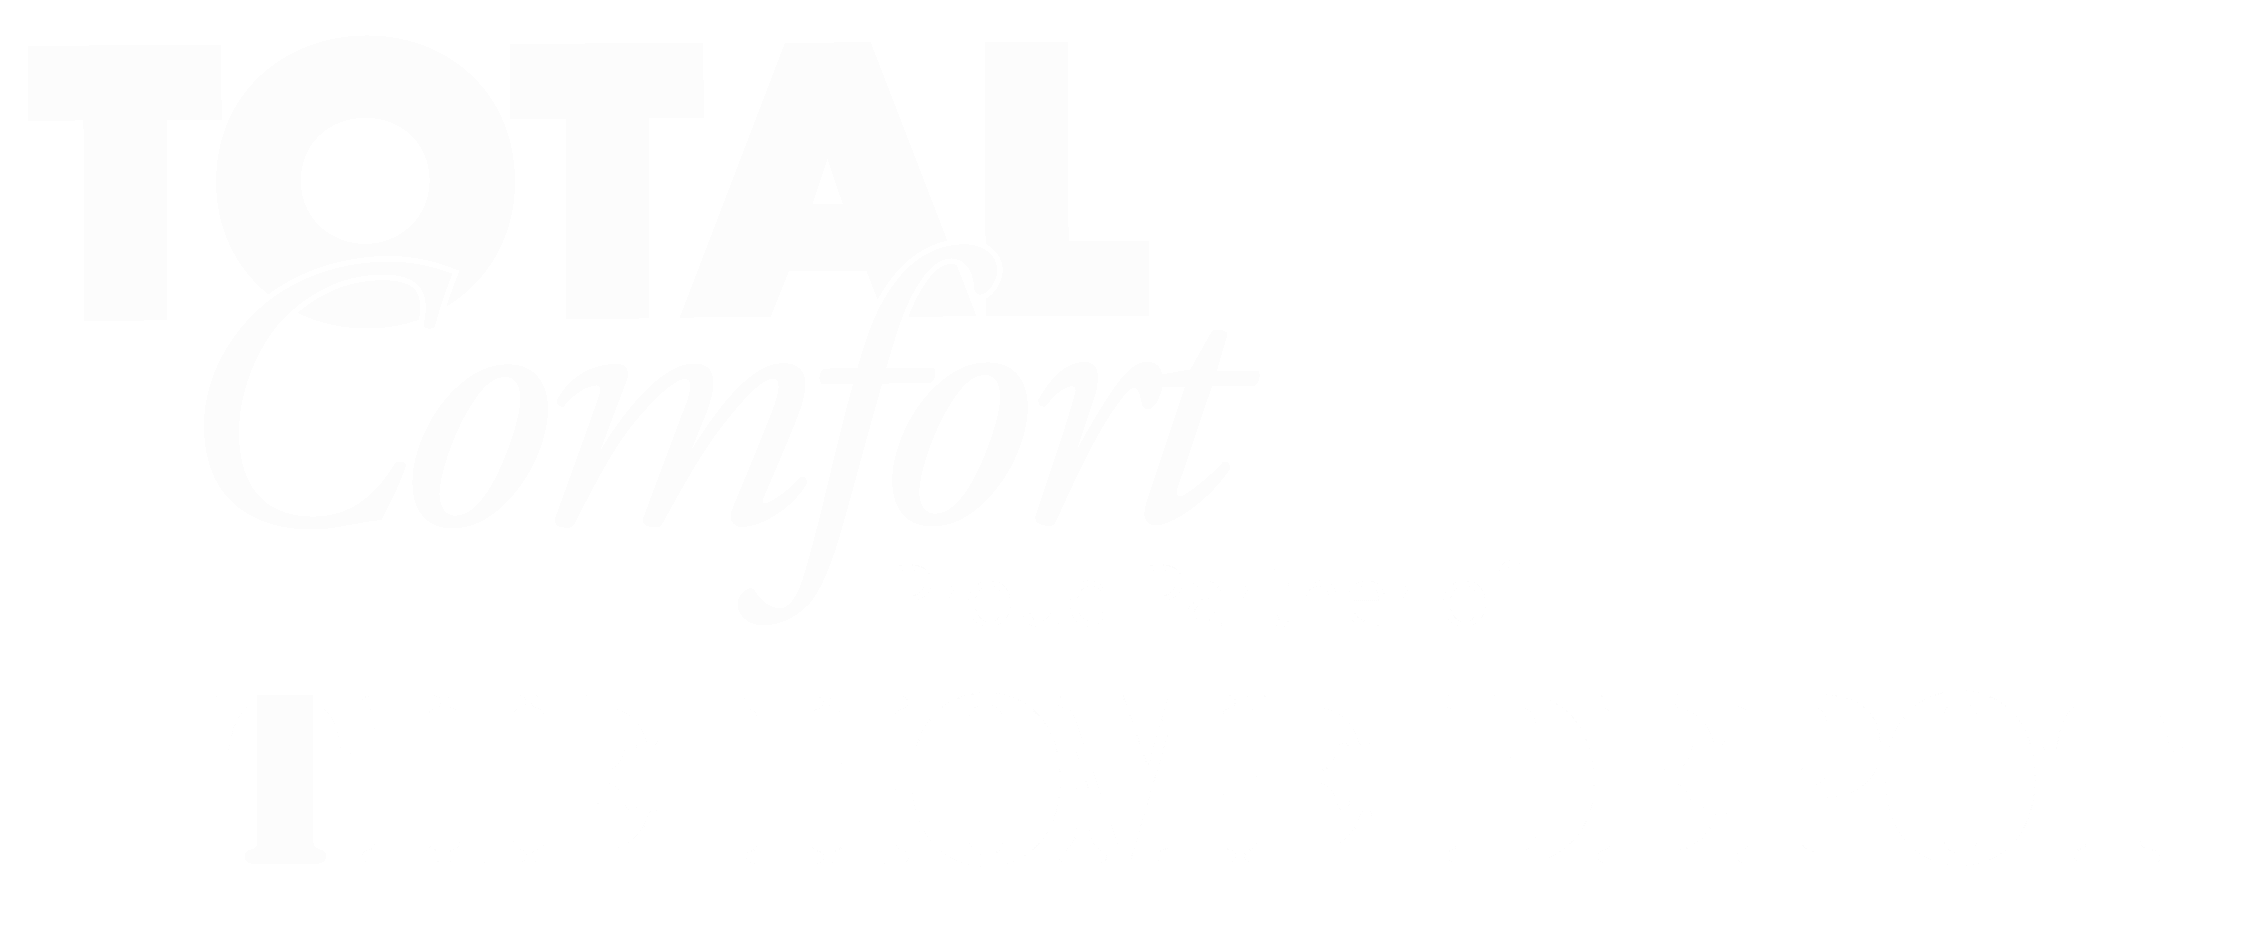 Total Comfort logo